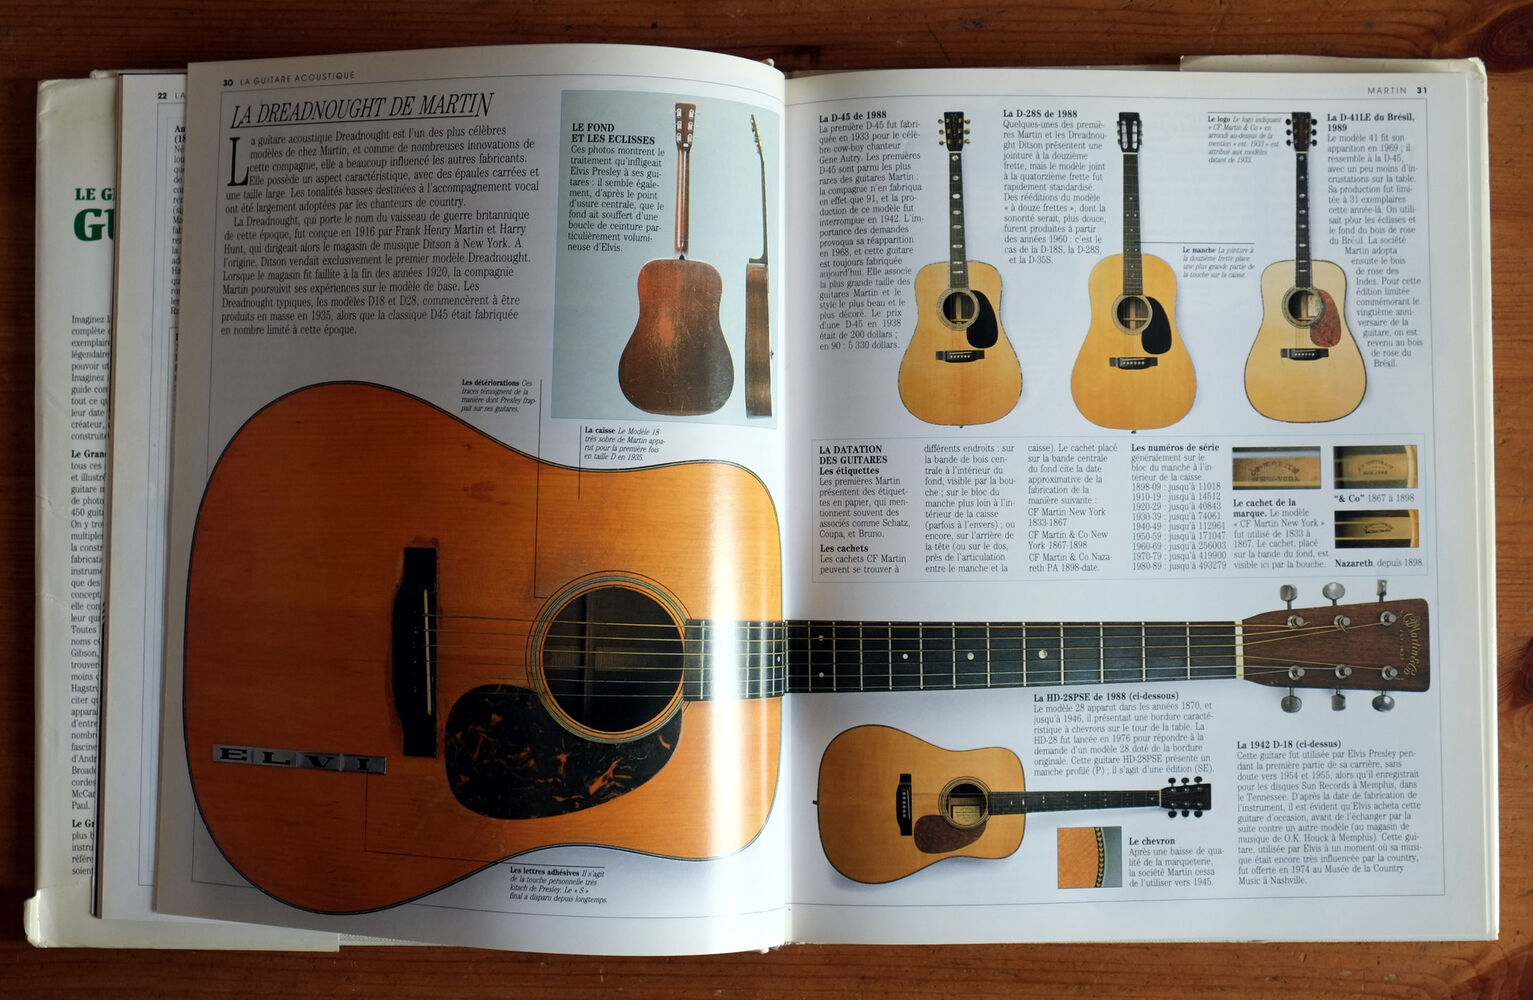 Le grand livre de la guitare par Tony Bacon d'occasion - Zikinf